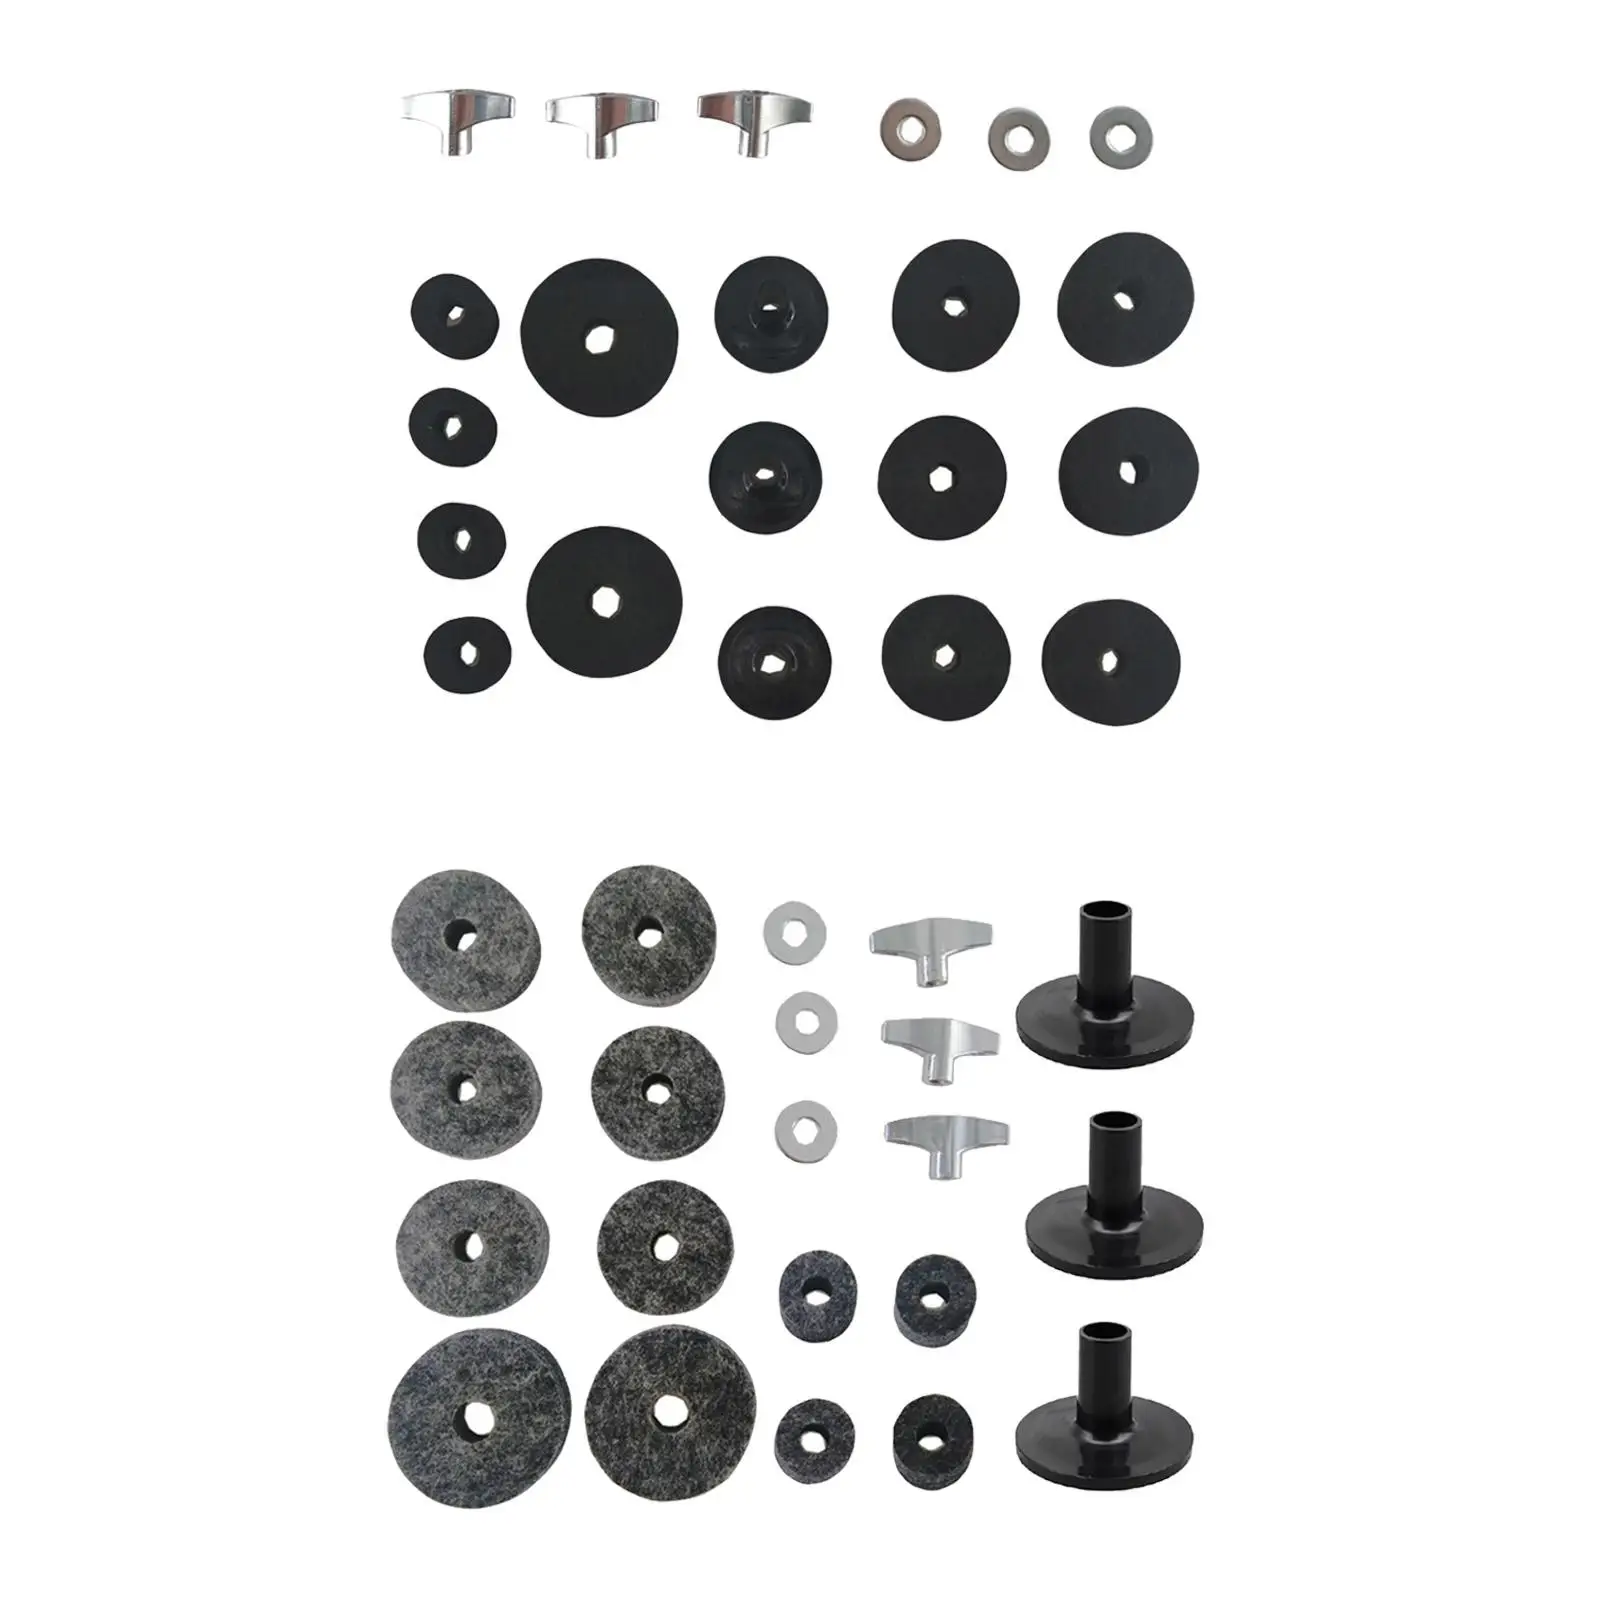 21Pcs Drum Replacement Parts Accs Cymbal Felt Washer Cymbal Washer Replacement Accessories Musical Accessories Drum Felt